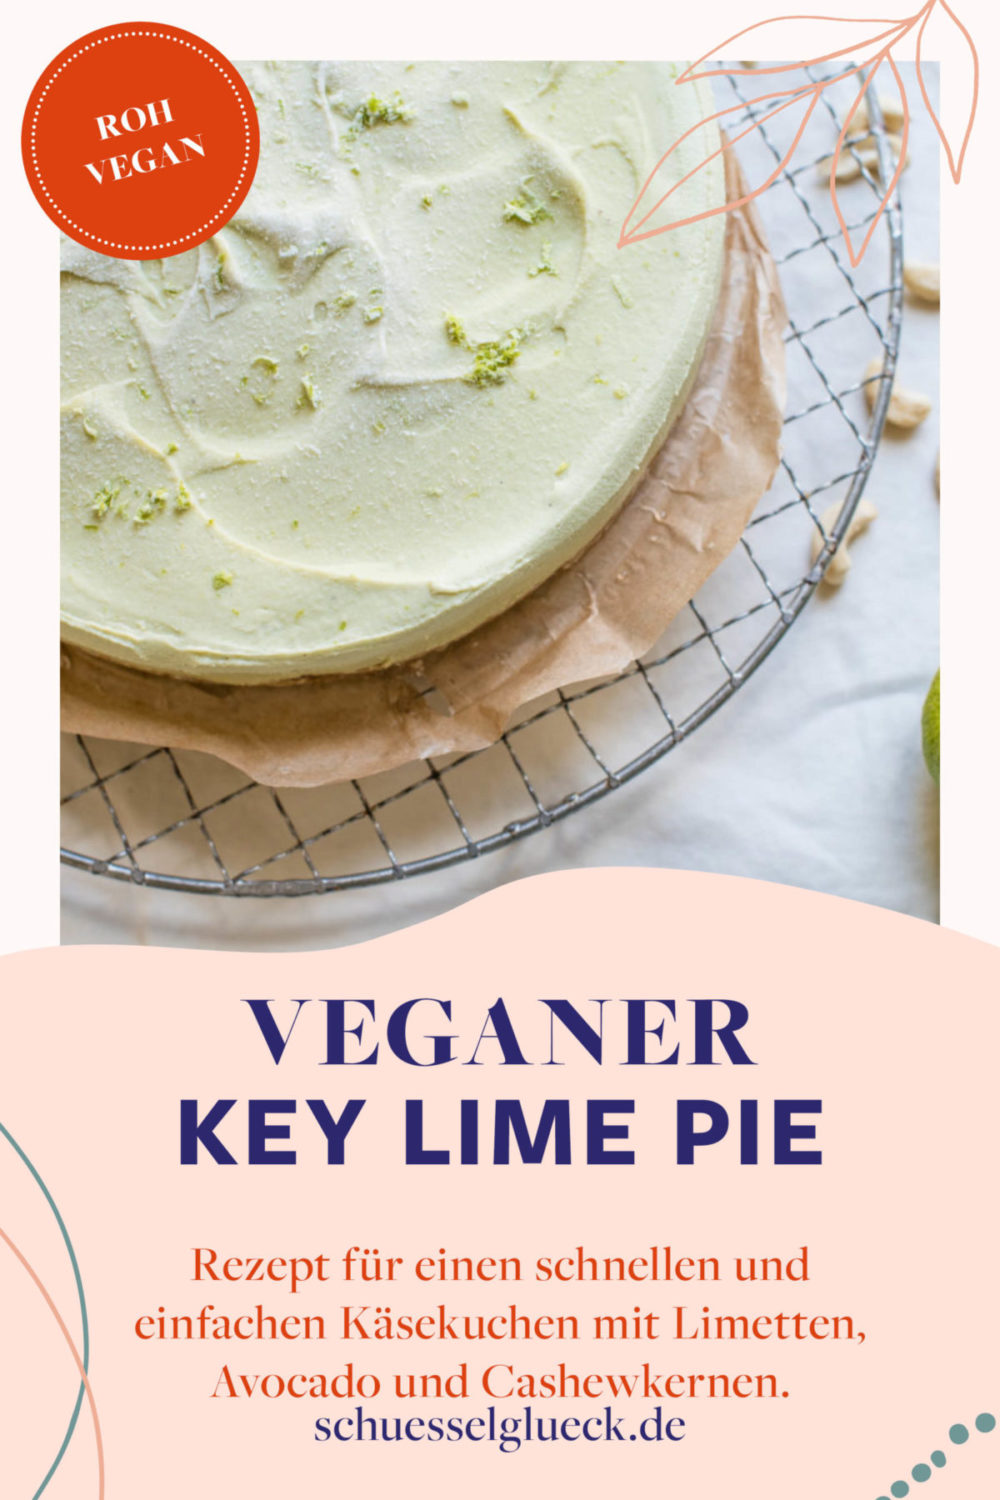 Veganer Key Lime Pie 2.0 – unser liebster Sommerkuchen direkt aus dem Kühlschrank (ohne backen)